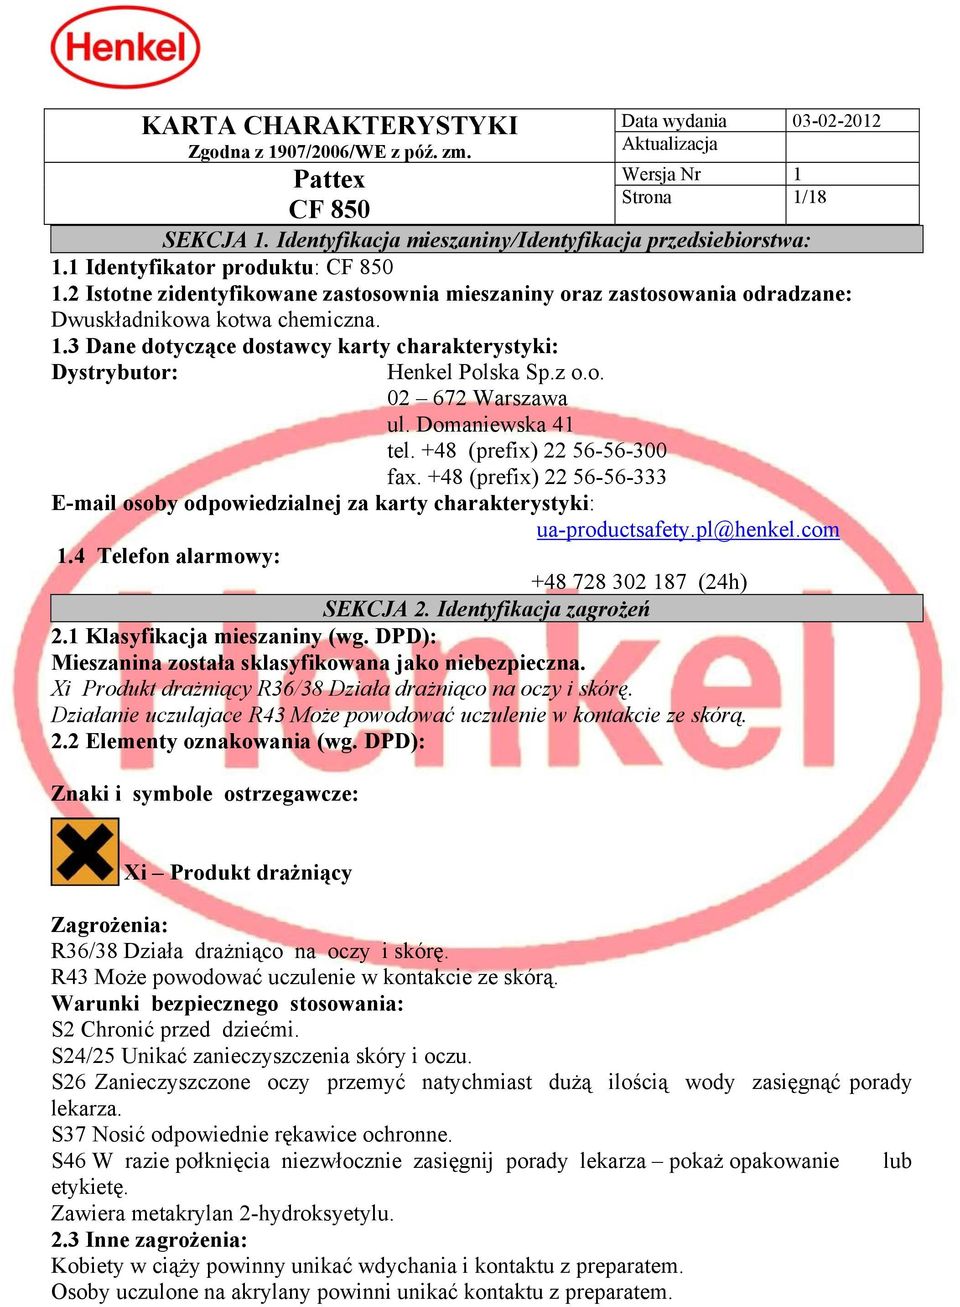 Domaniewska 41 tel. +48 (prefix) 22 56-56-300 fax. +48 (prefix) 22 56-56-333 E-mail osoby odpowiedzialnej za karty charakterystyki: ua-productsafety.pl@henkel.com 1.